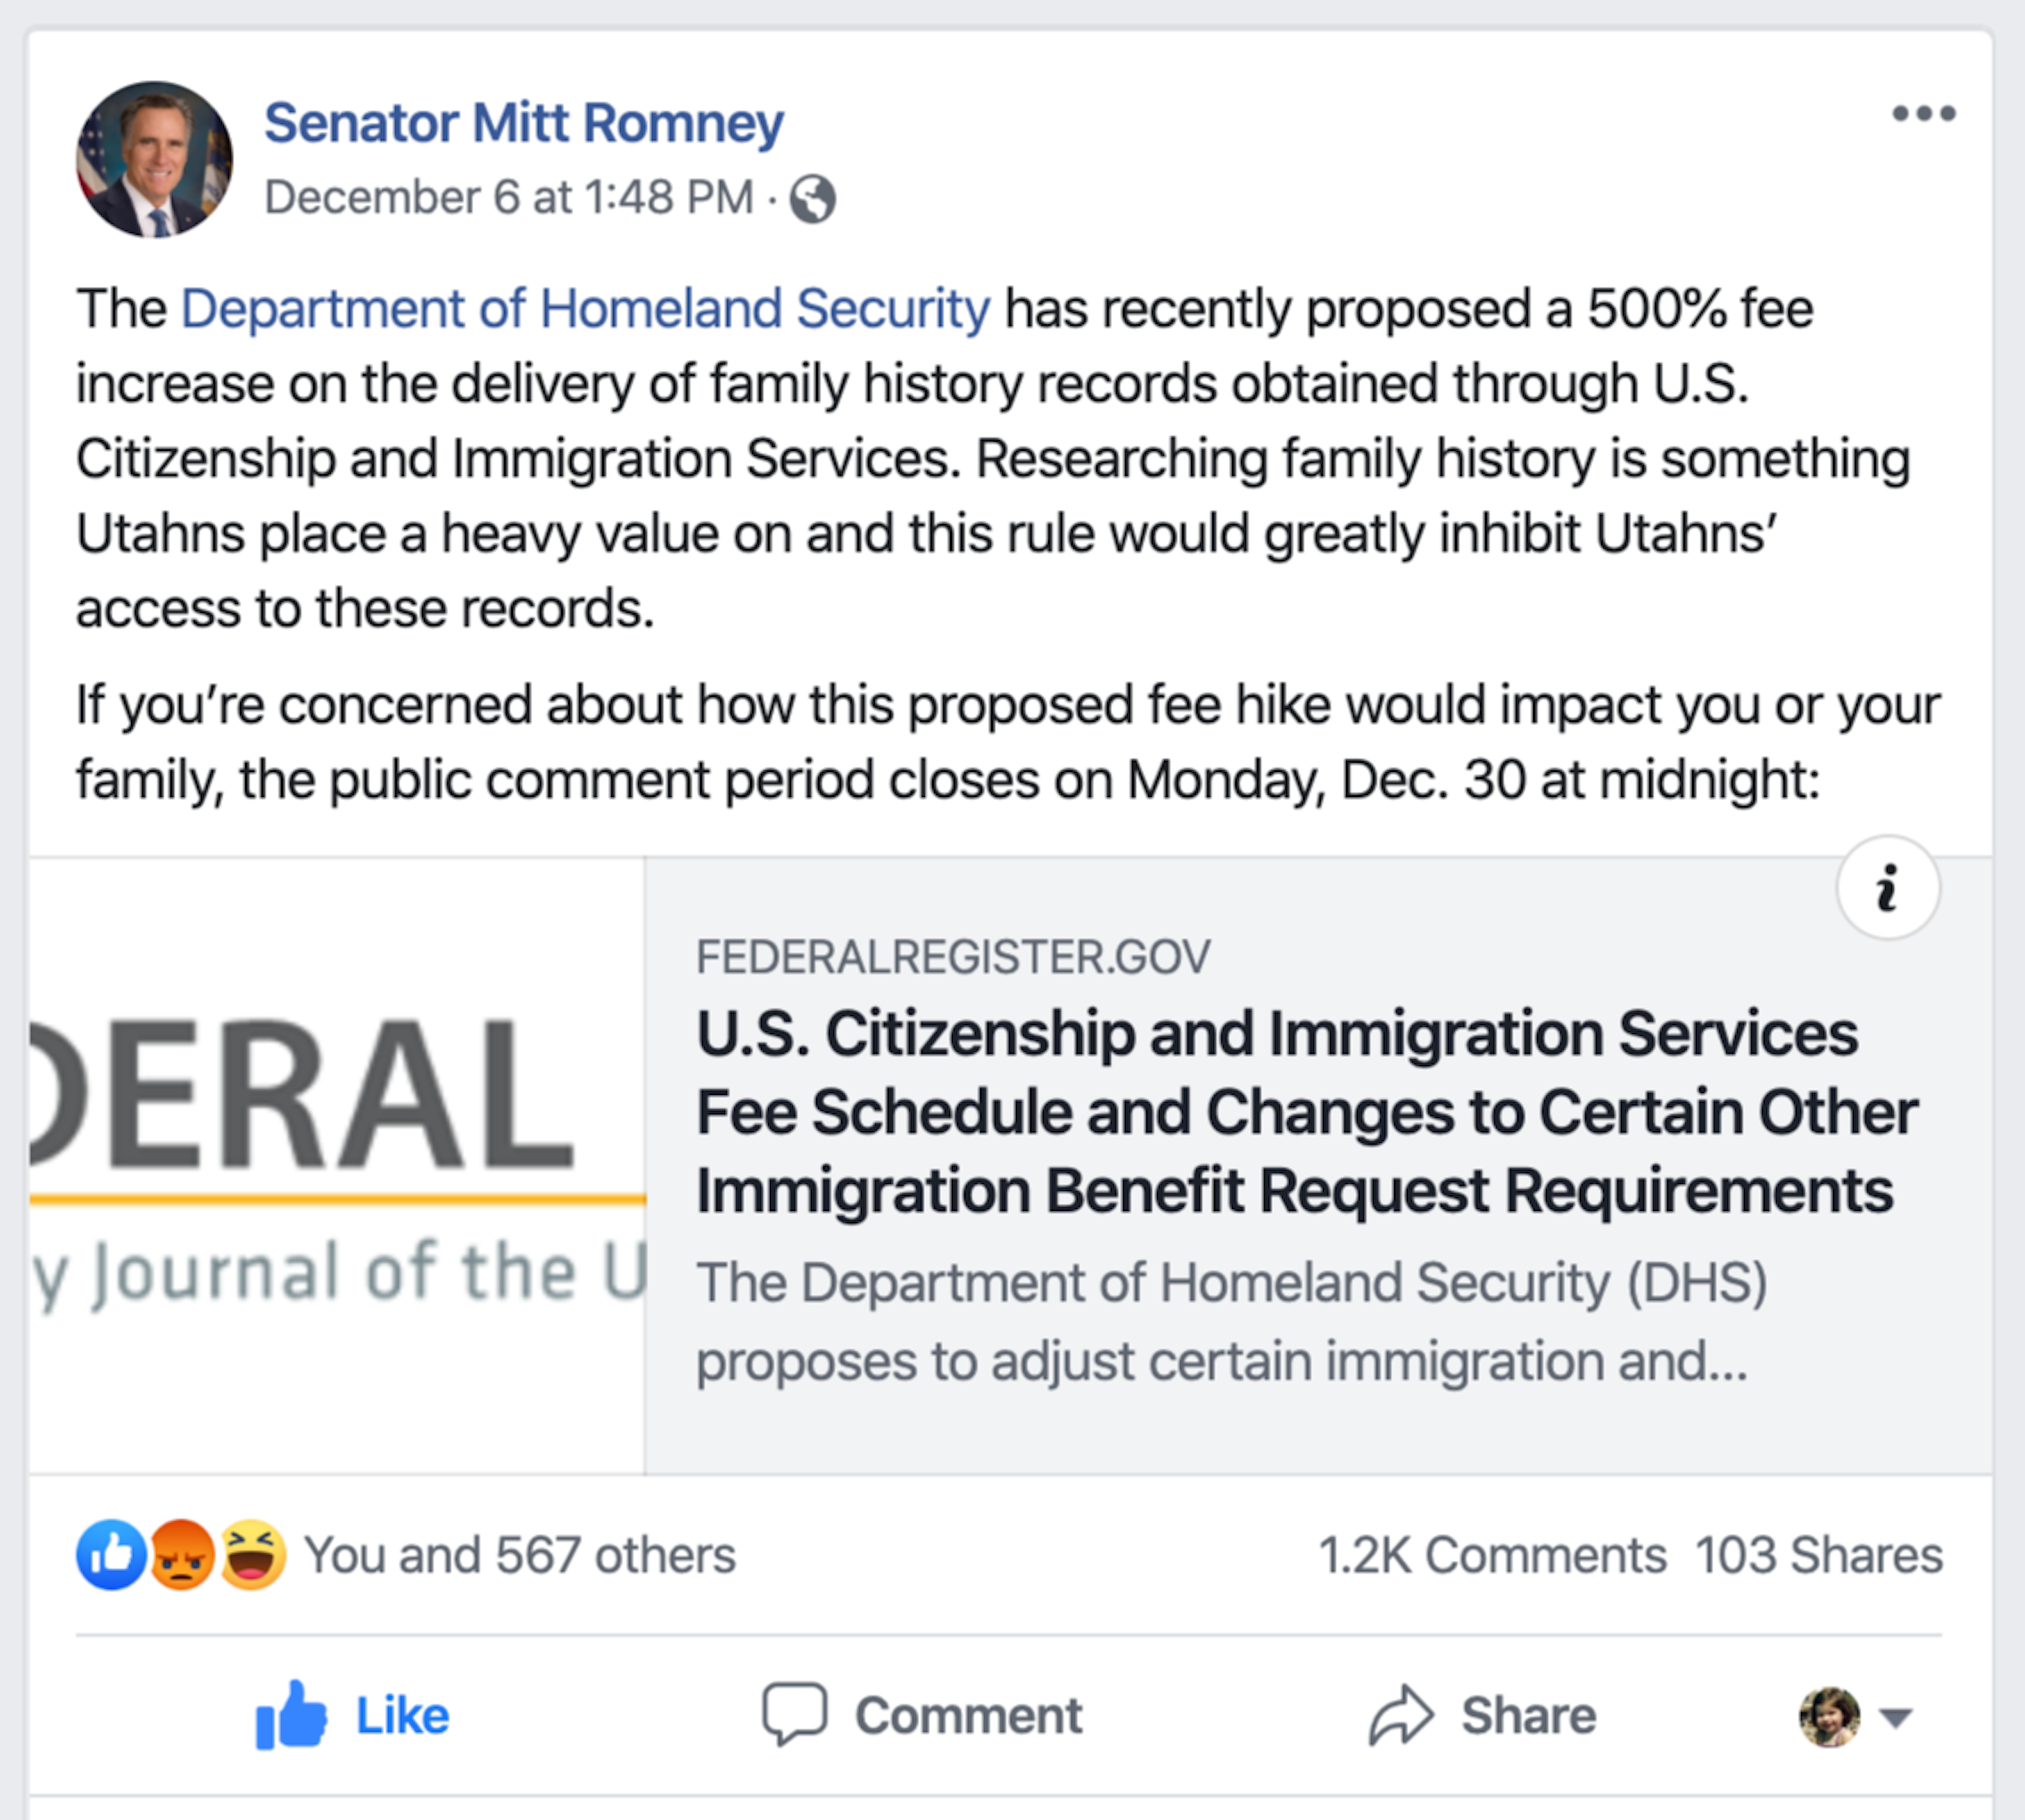 Senator Mitt Romney's official Facebook page